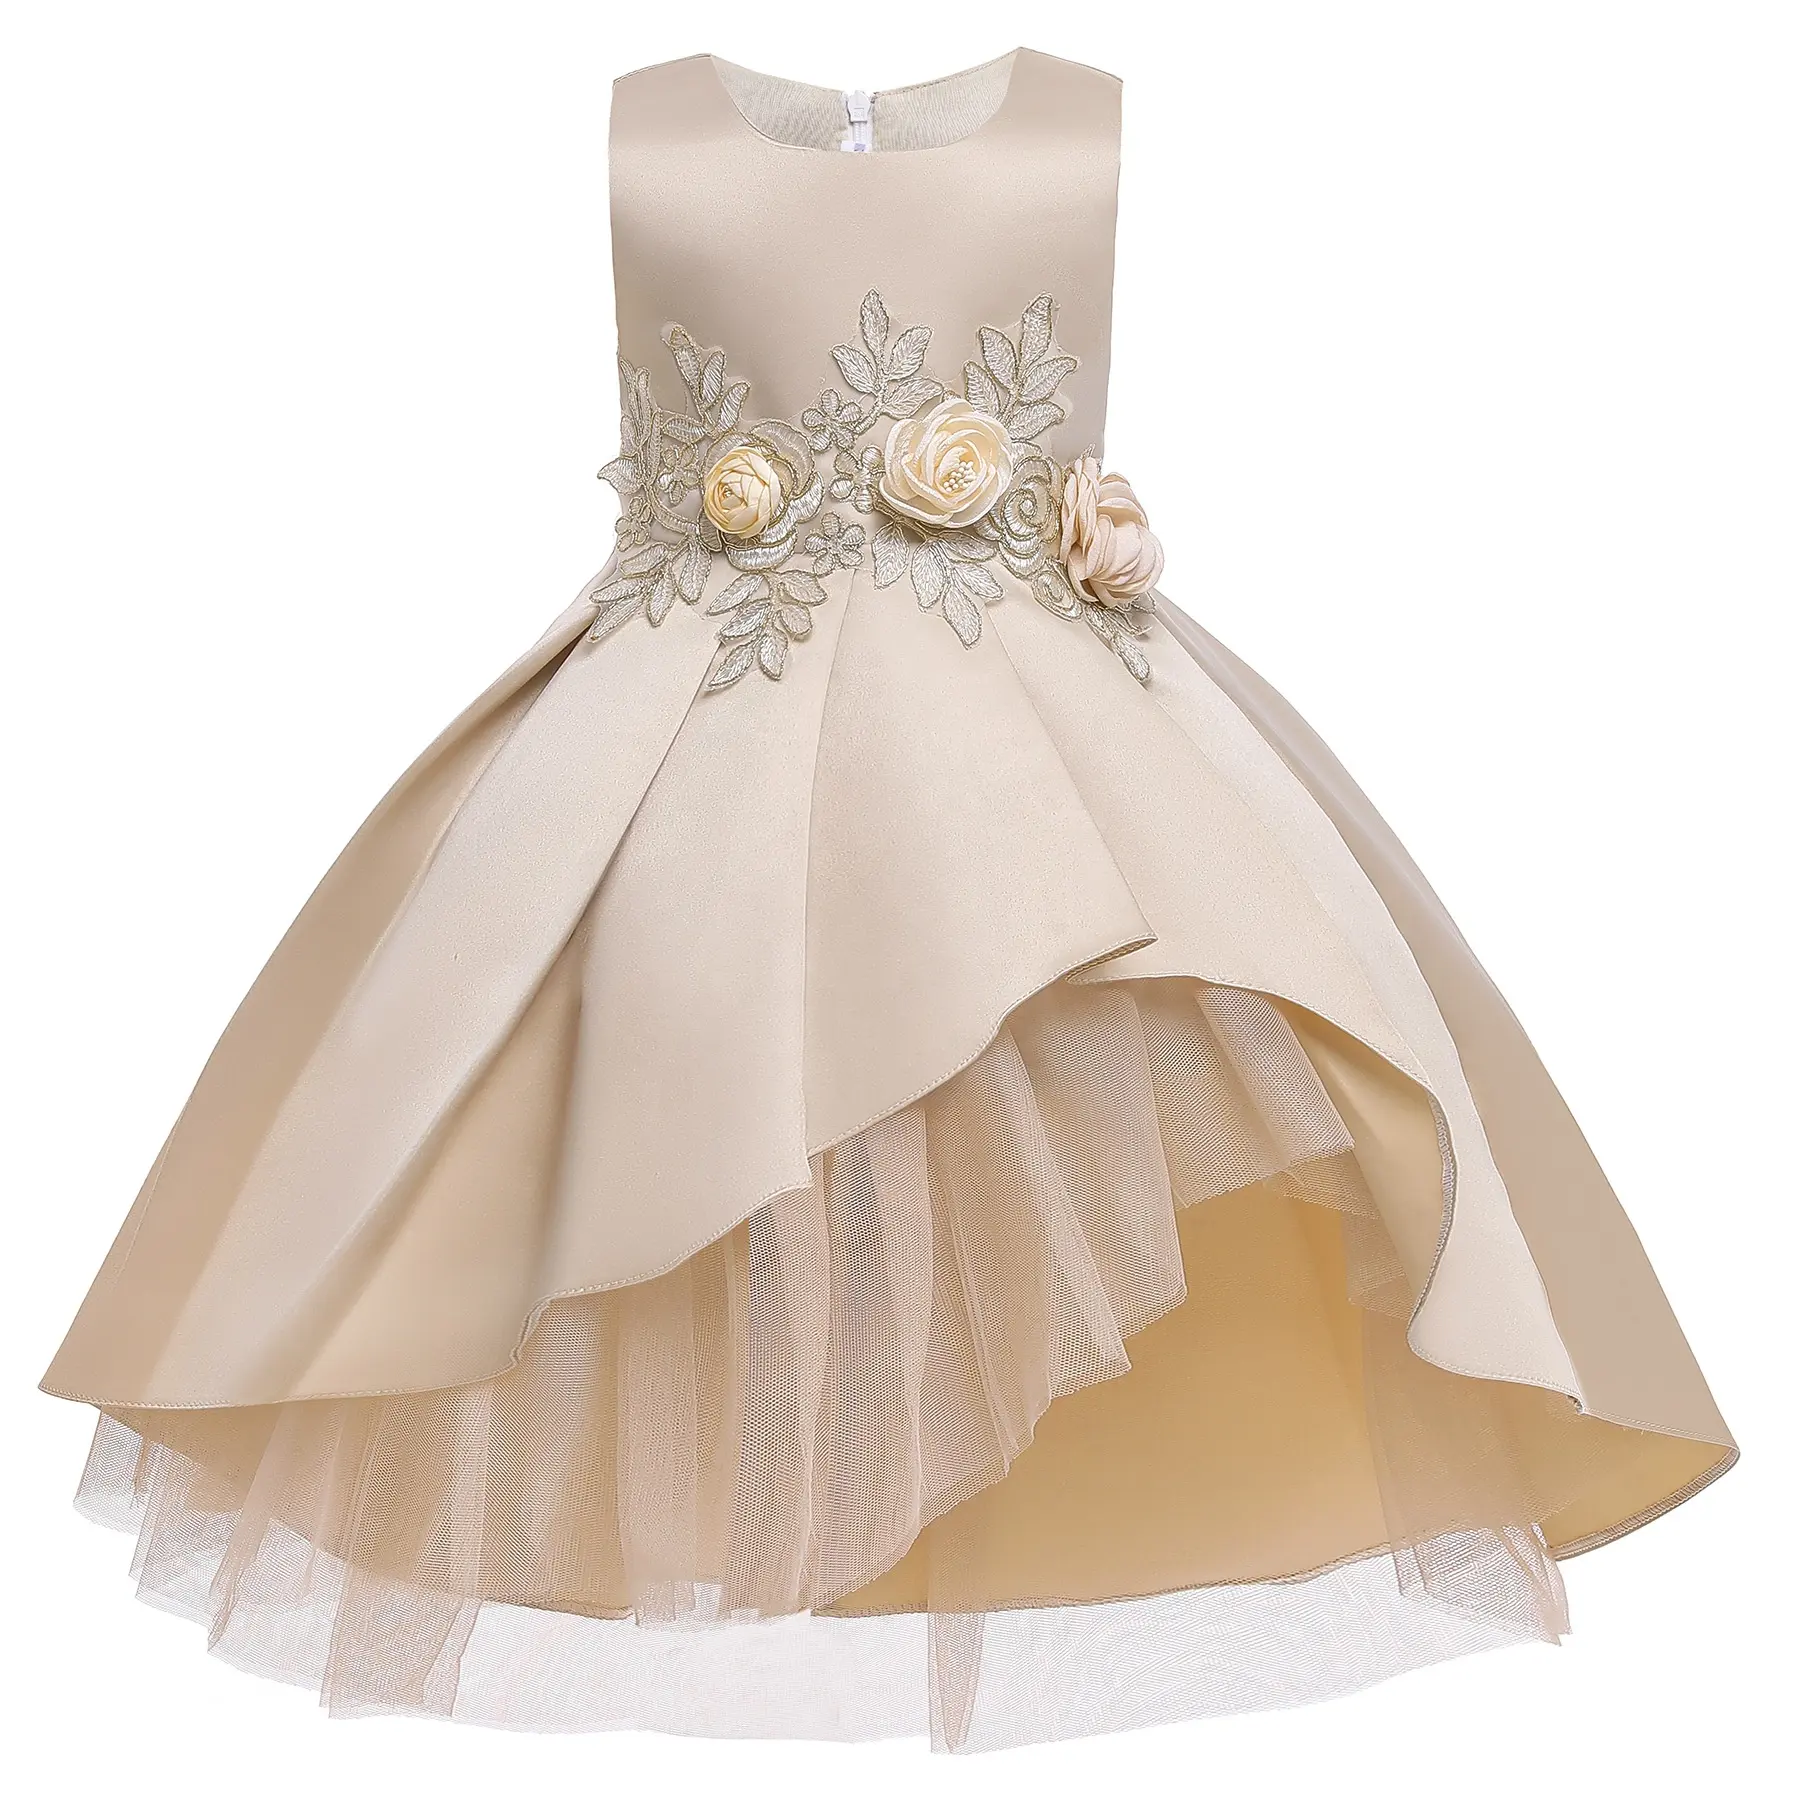 Çocuk giyim fantezi parti elbise dantel örgü Frocks tasarımlar tül çiçek elbiseler kızlar için